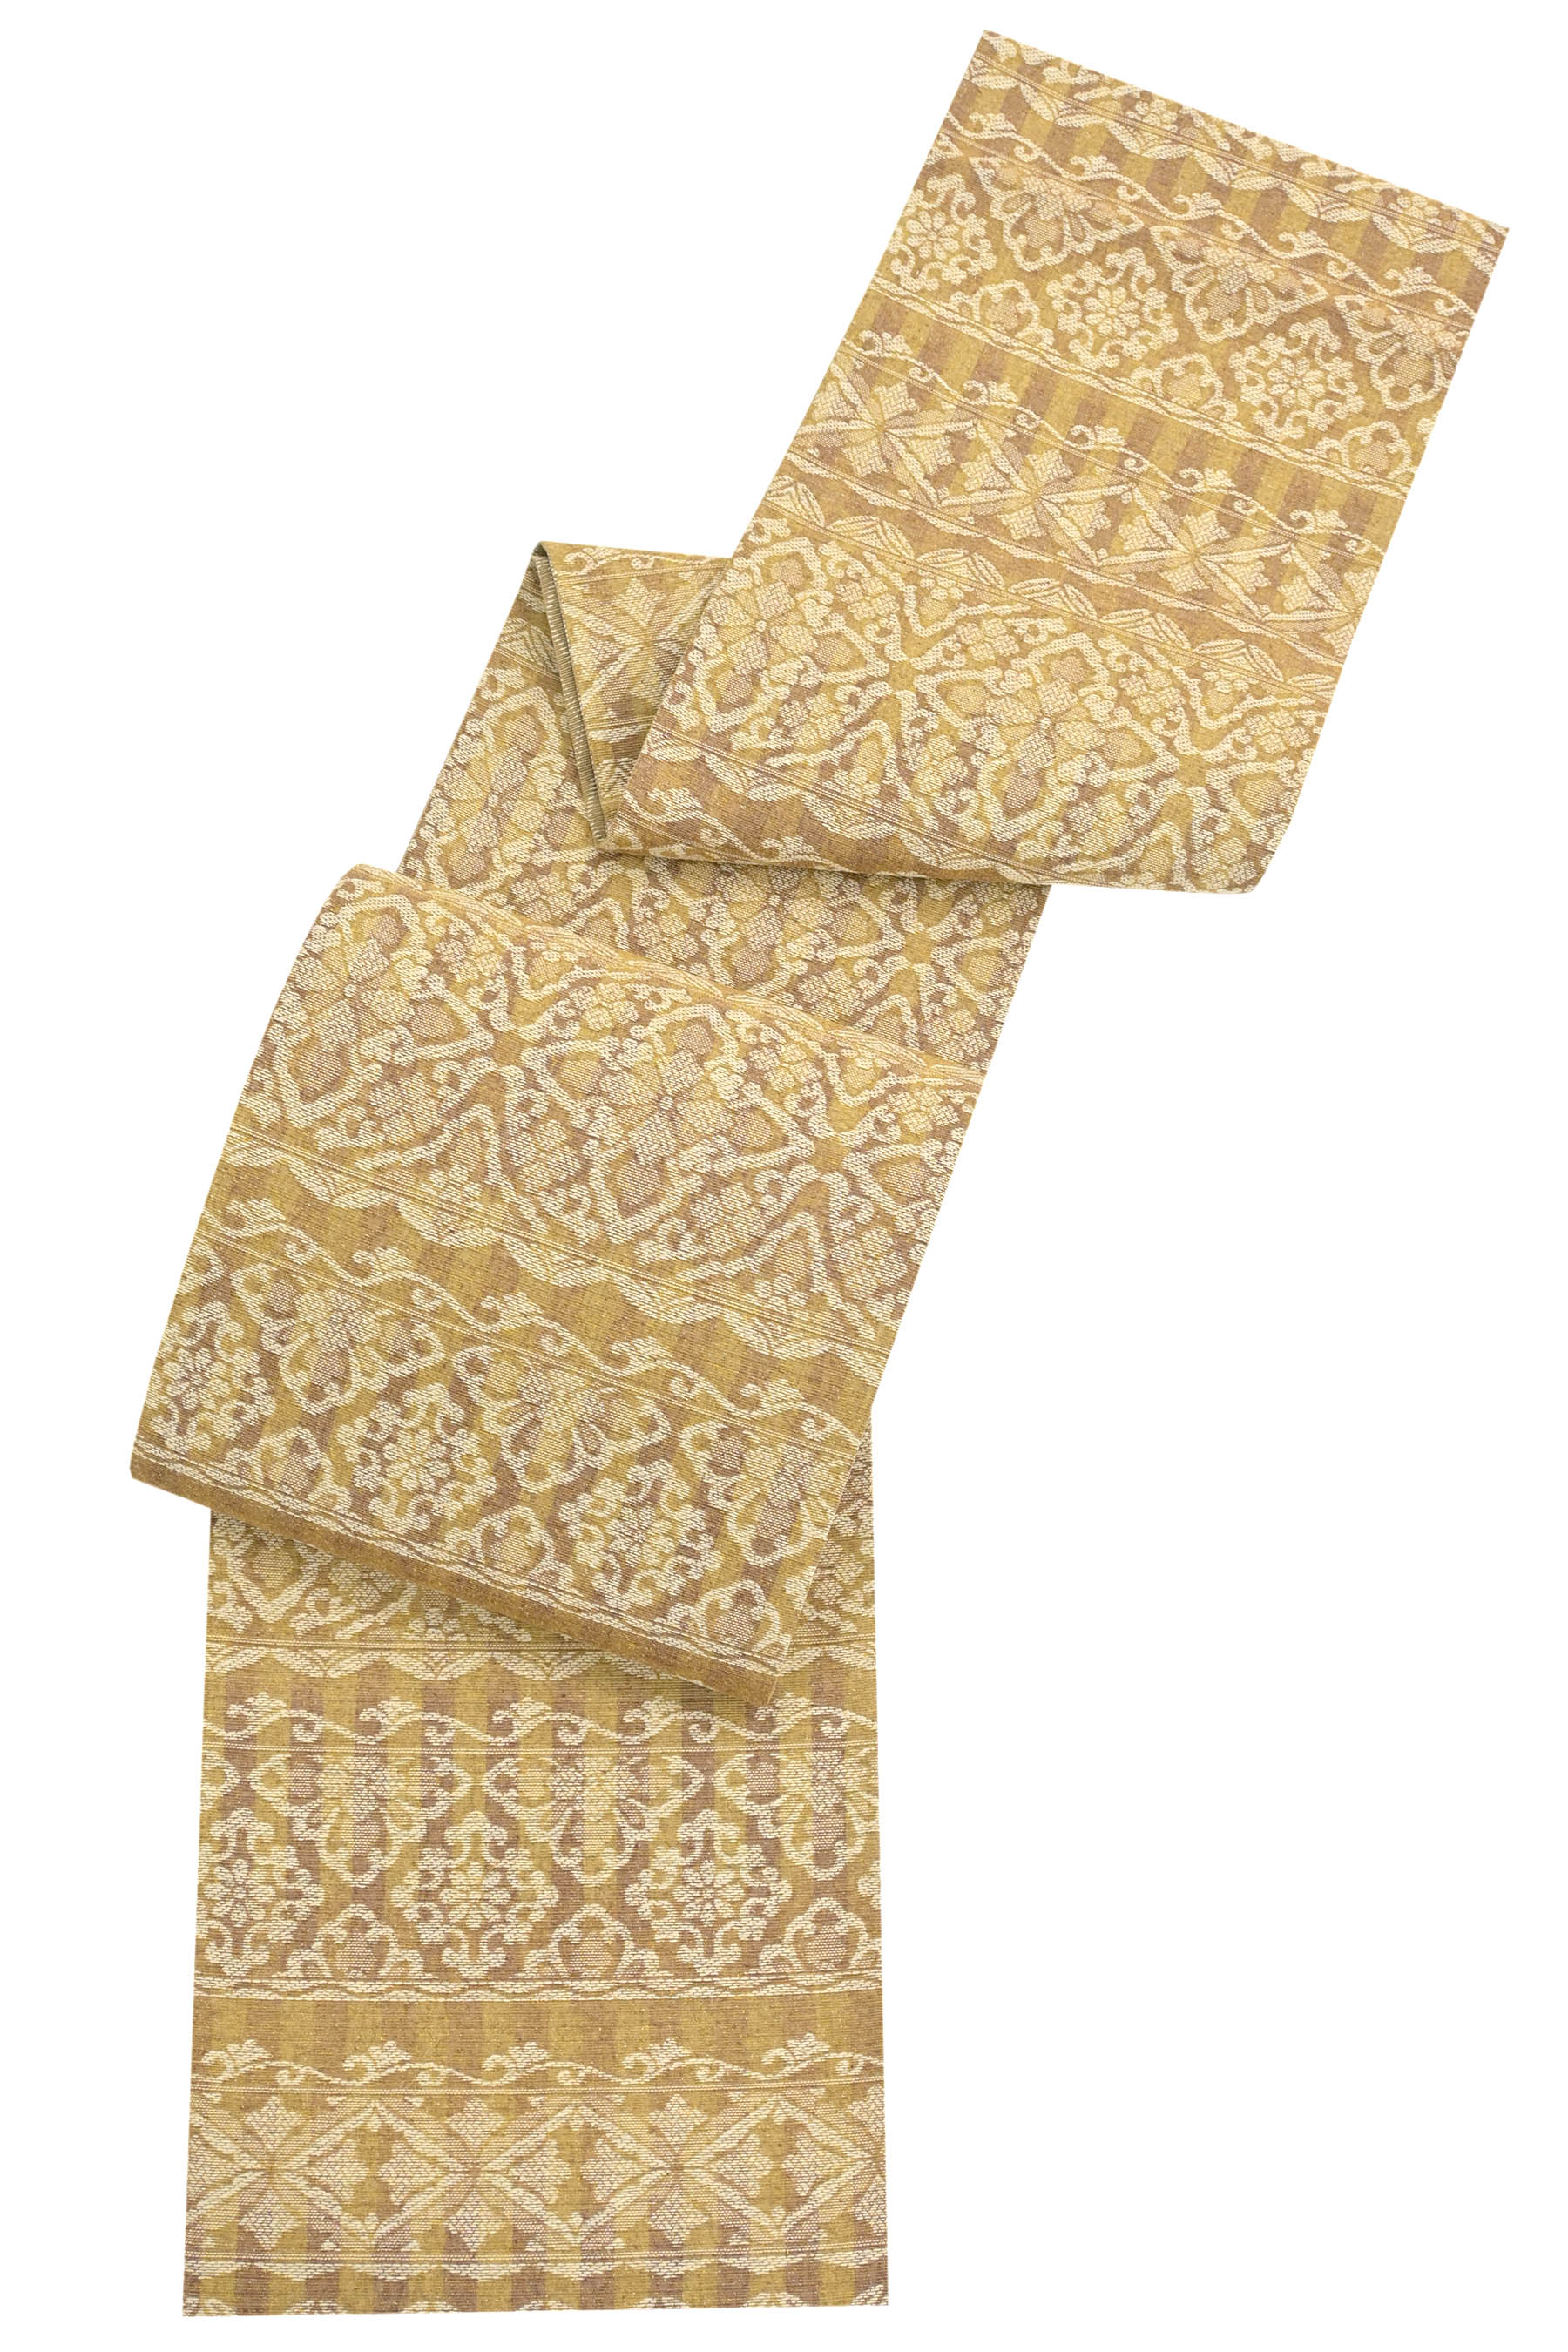 専用帯335 ●加納幸織物謹製 高級 正絹 六通 袋帯おびおび出品在庫